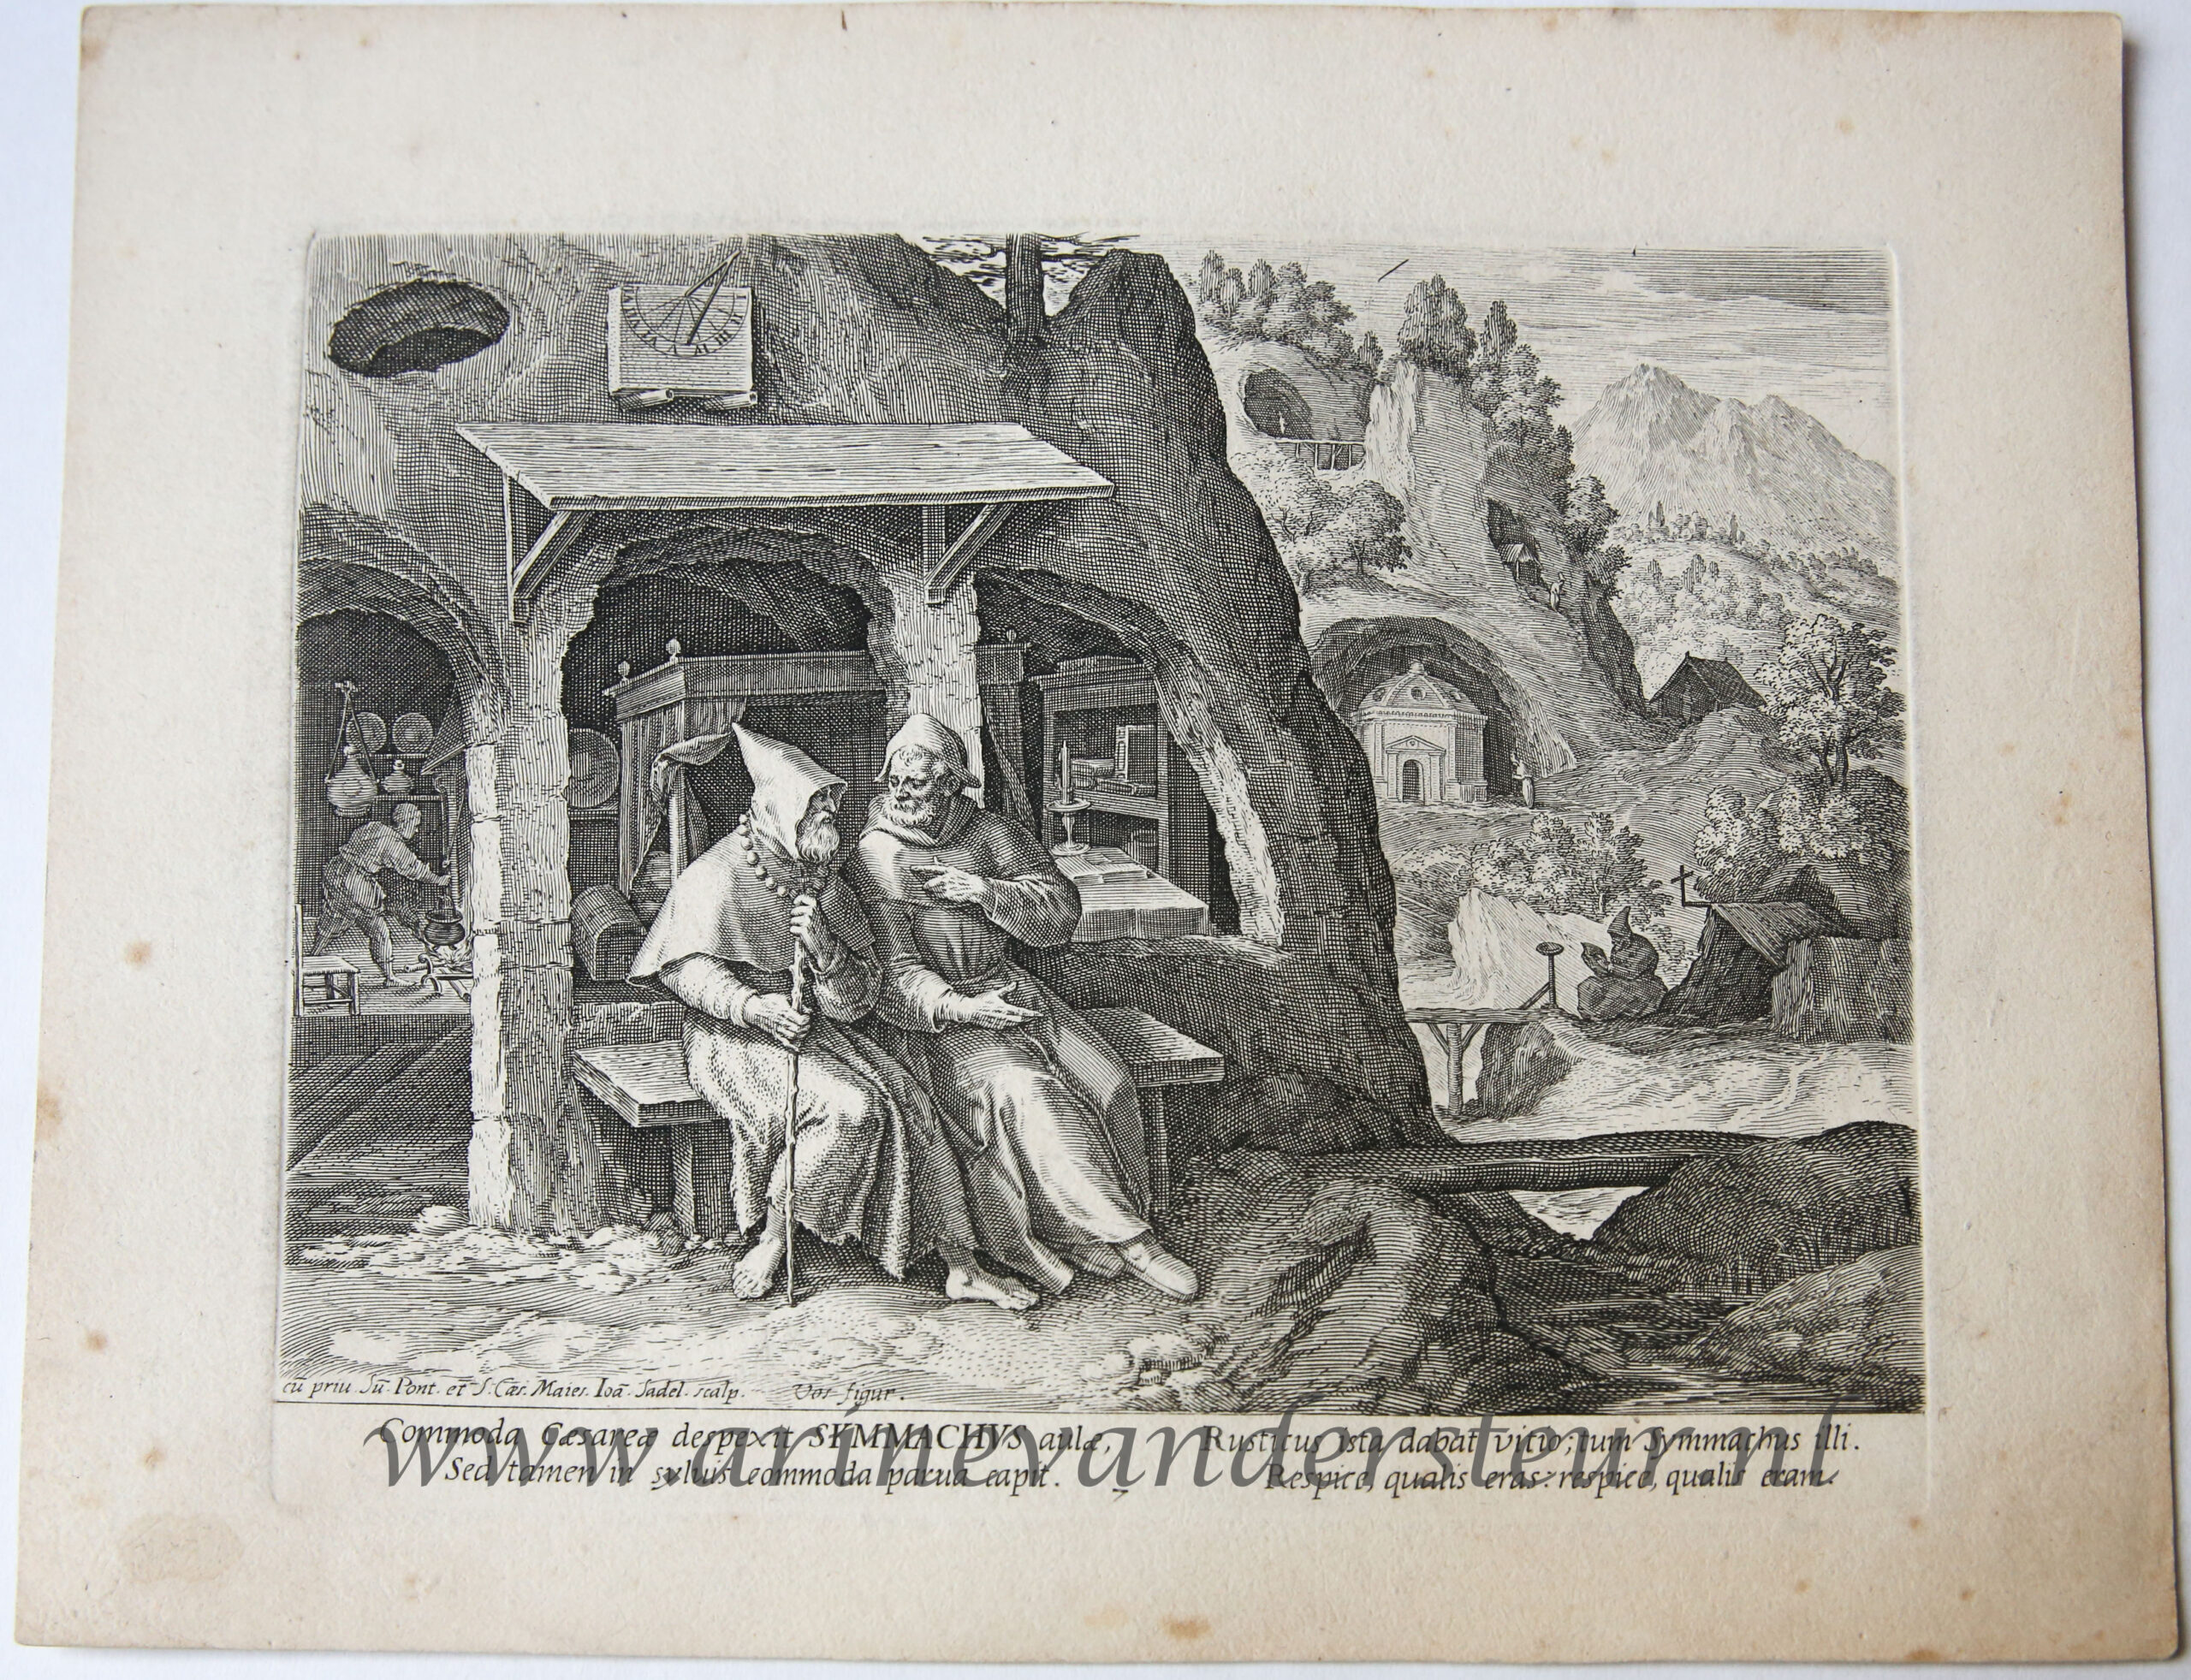 [Antique landscape print, ca 1600] SYMMACHUS (nr. 7 from the serie ORACULUM ANACHORETICUM), published ca 1600.